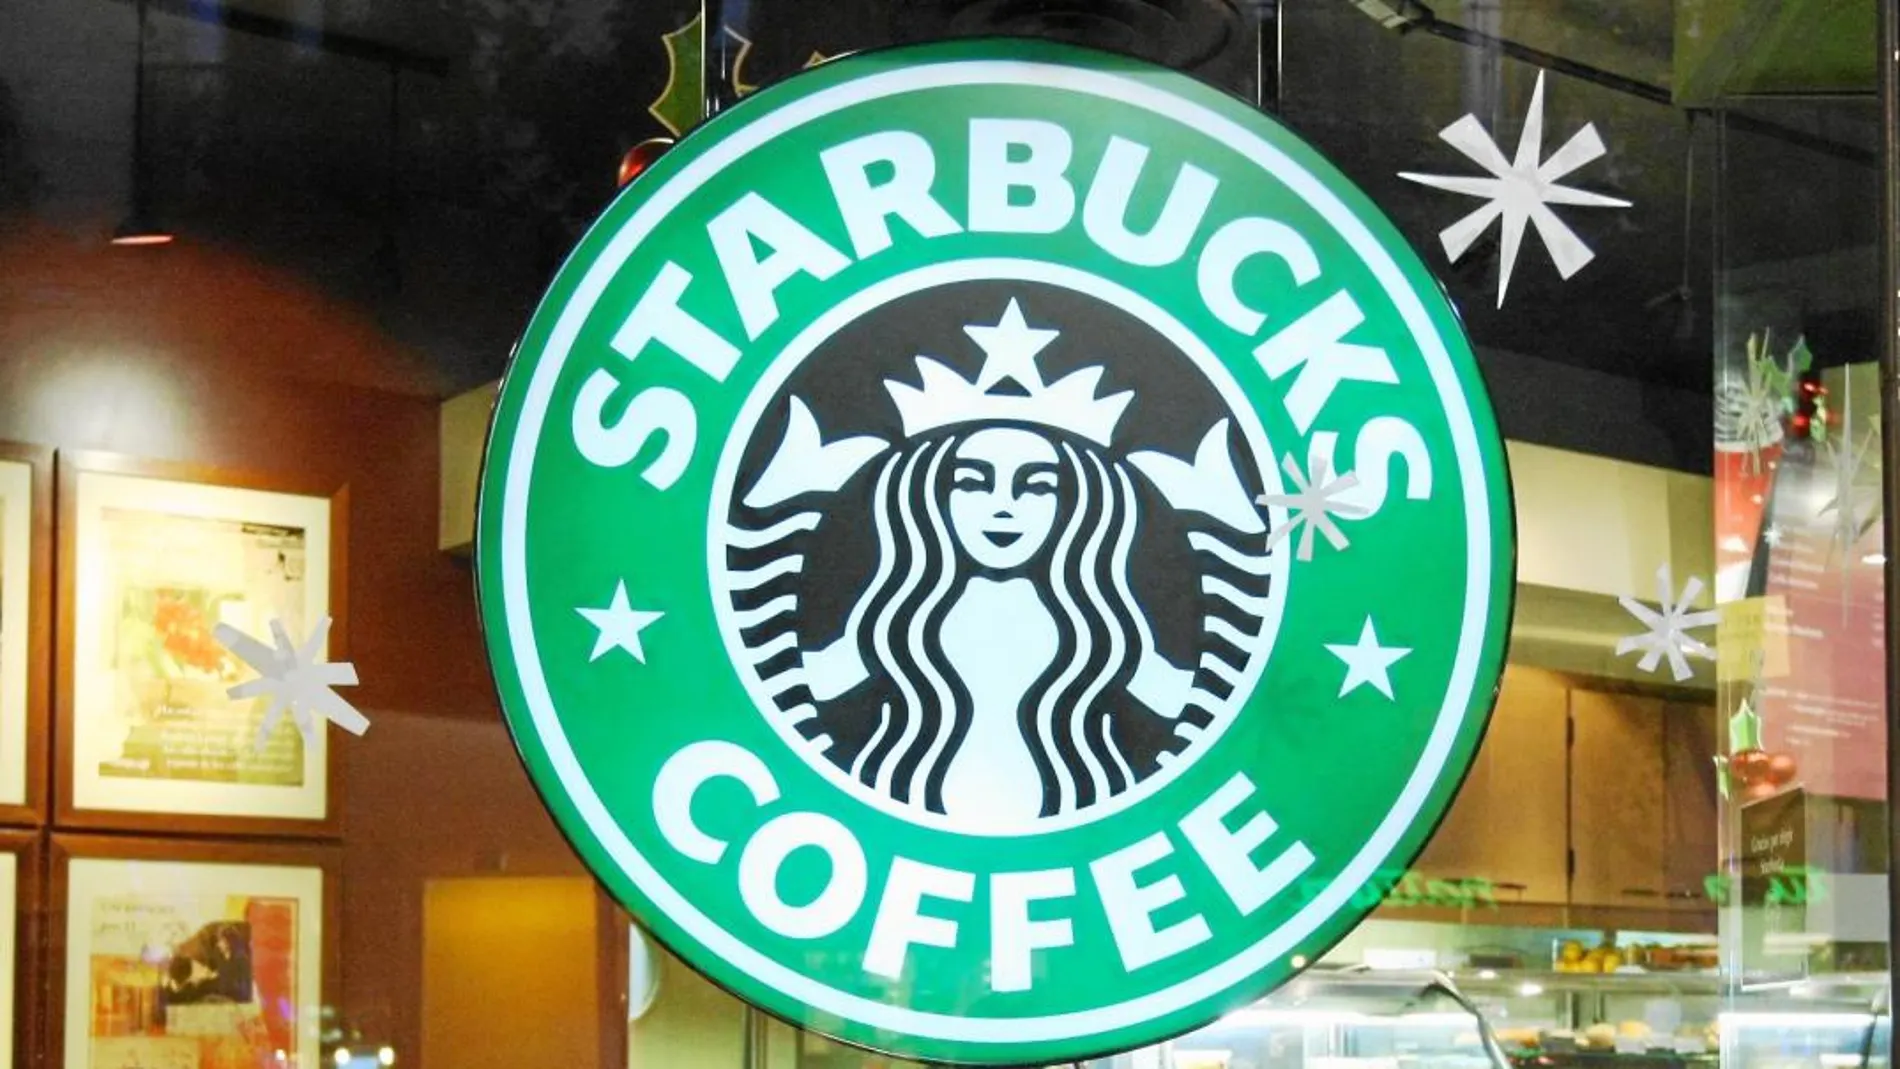 El trato permitirá que millones de personas más puedan disfrutar del famoso café de Starbucks en sus hogares